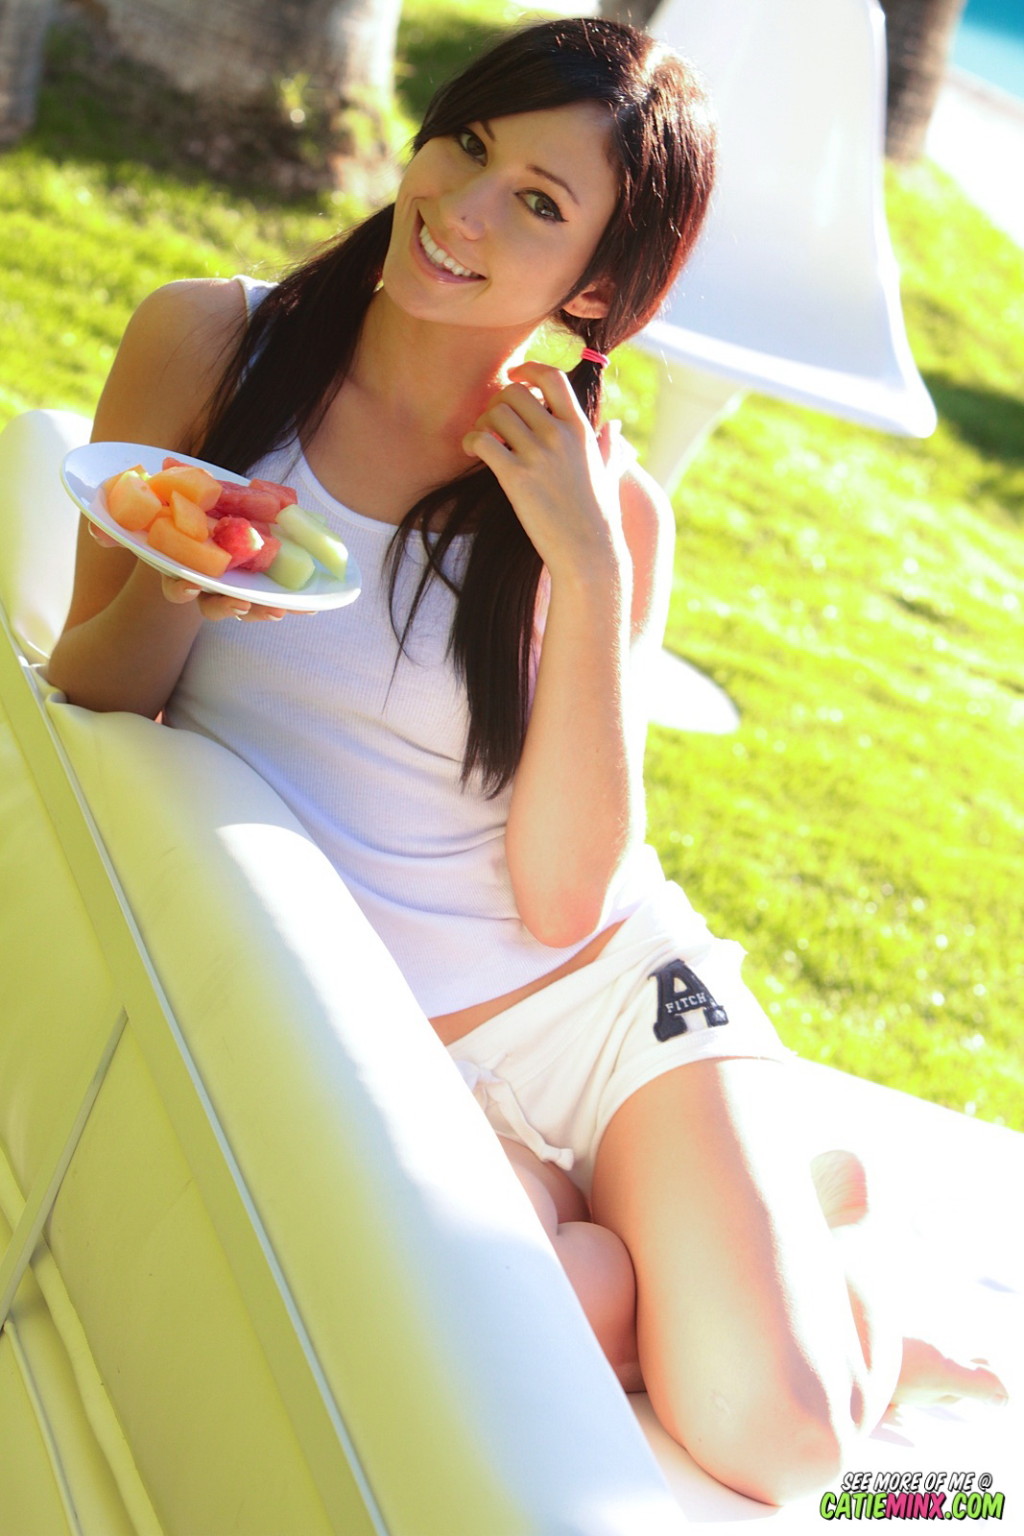 Catie Minx, una joven cachonda, se frota el coño con fruta al aire libre
 #67960944